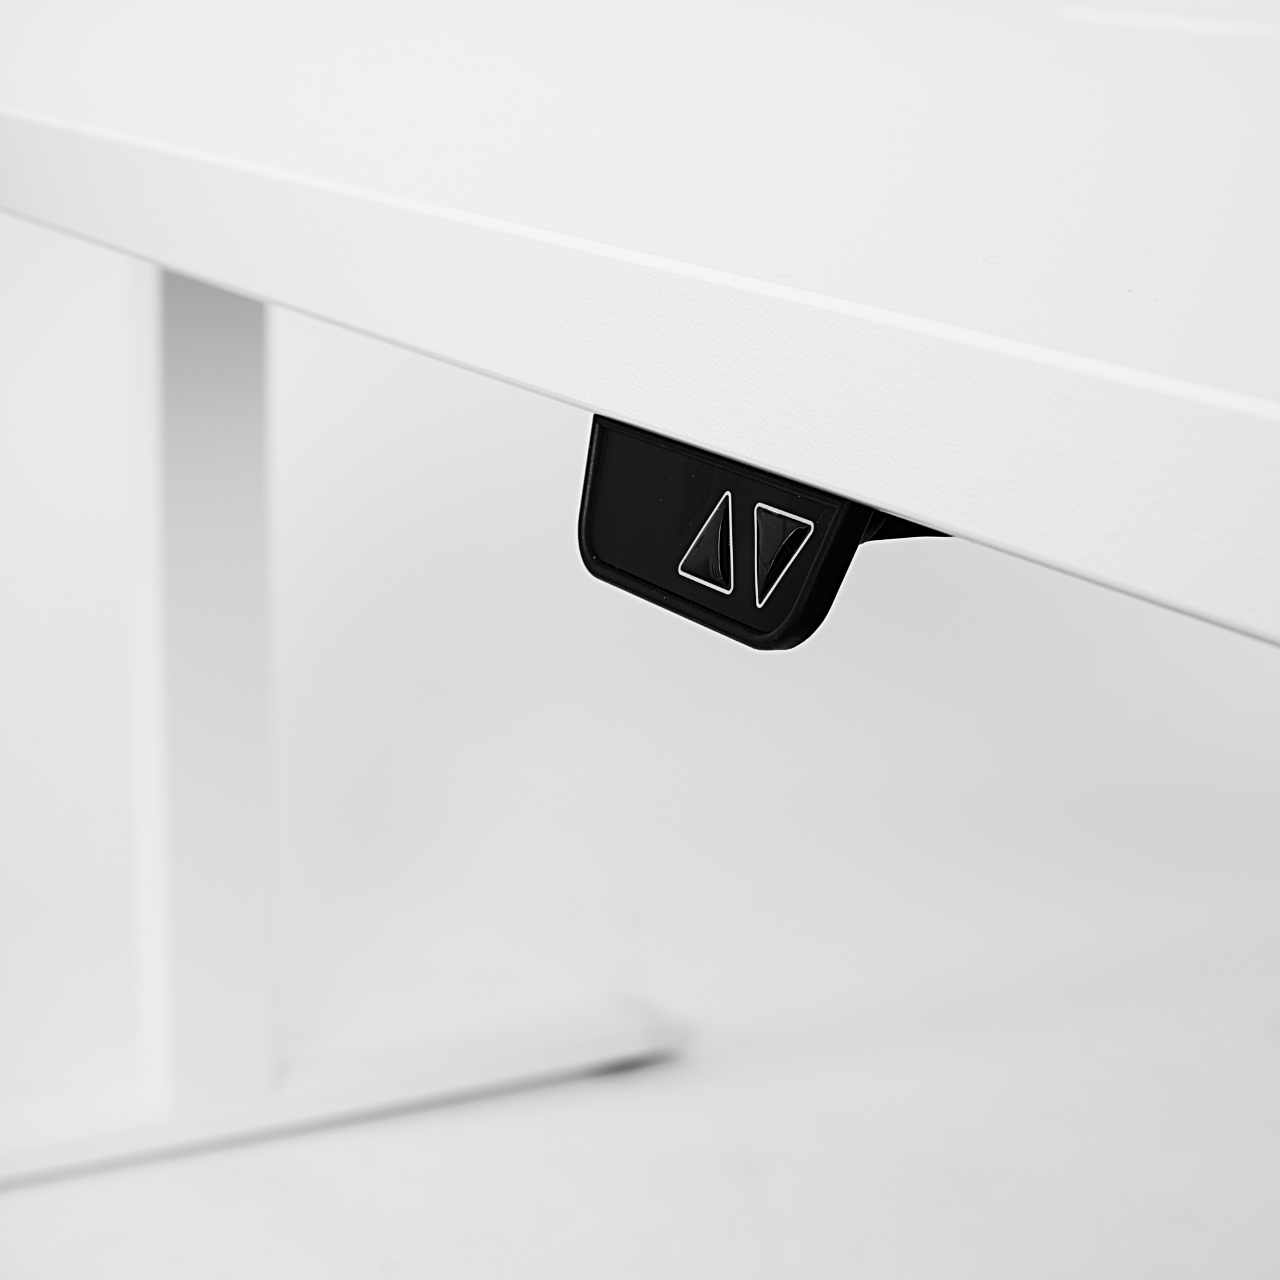 Pakeliamo stalo valdiklis || Reguliuojamo aukščio stalas || Biuro baldai || Darbo kėdės